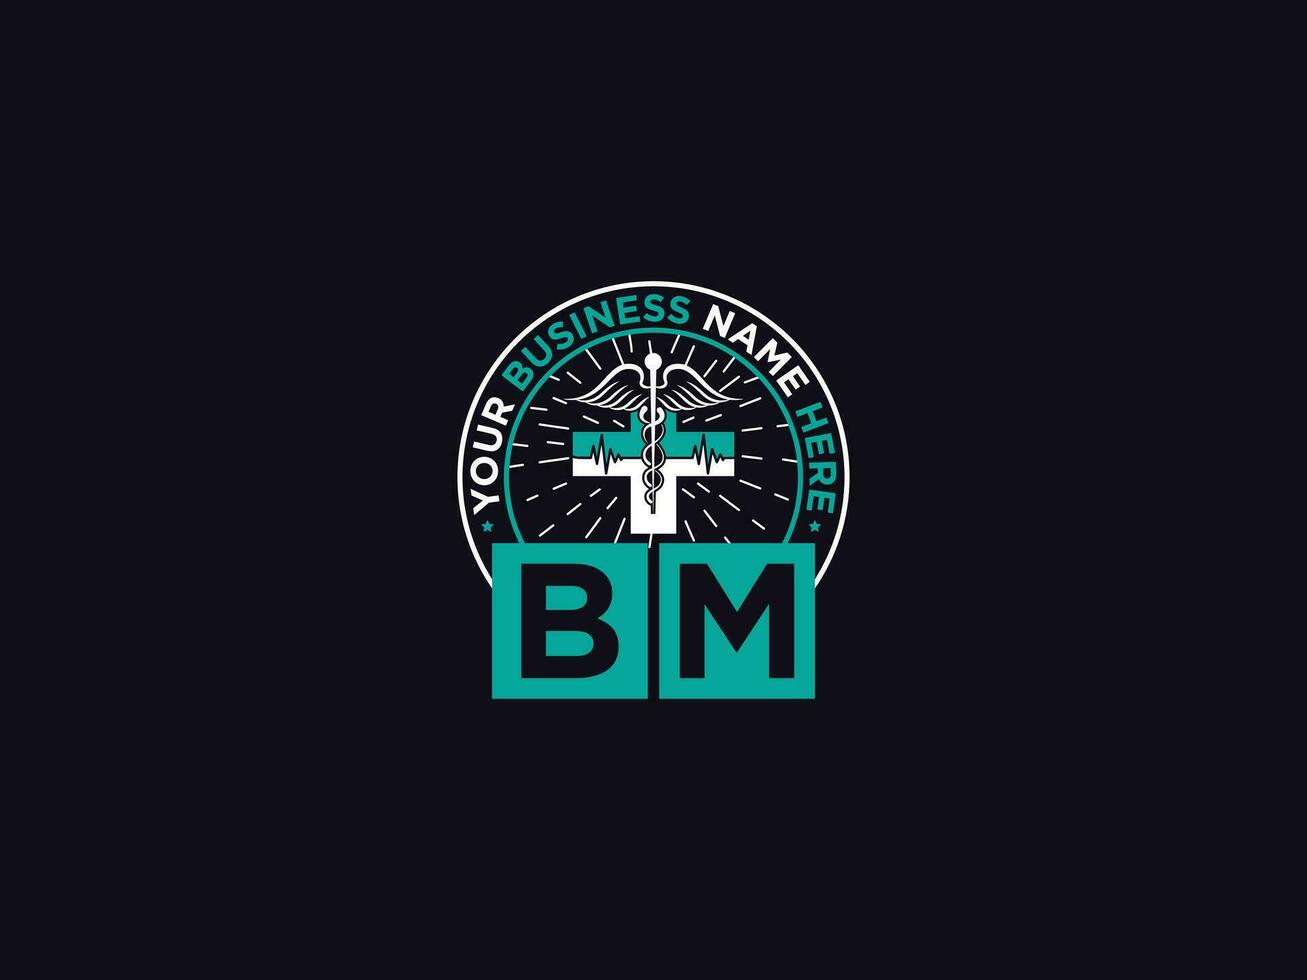 Modern Bm Medical logo, Initial Doctors BM Logo Letter For Clinic vector